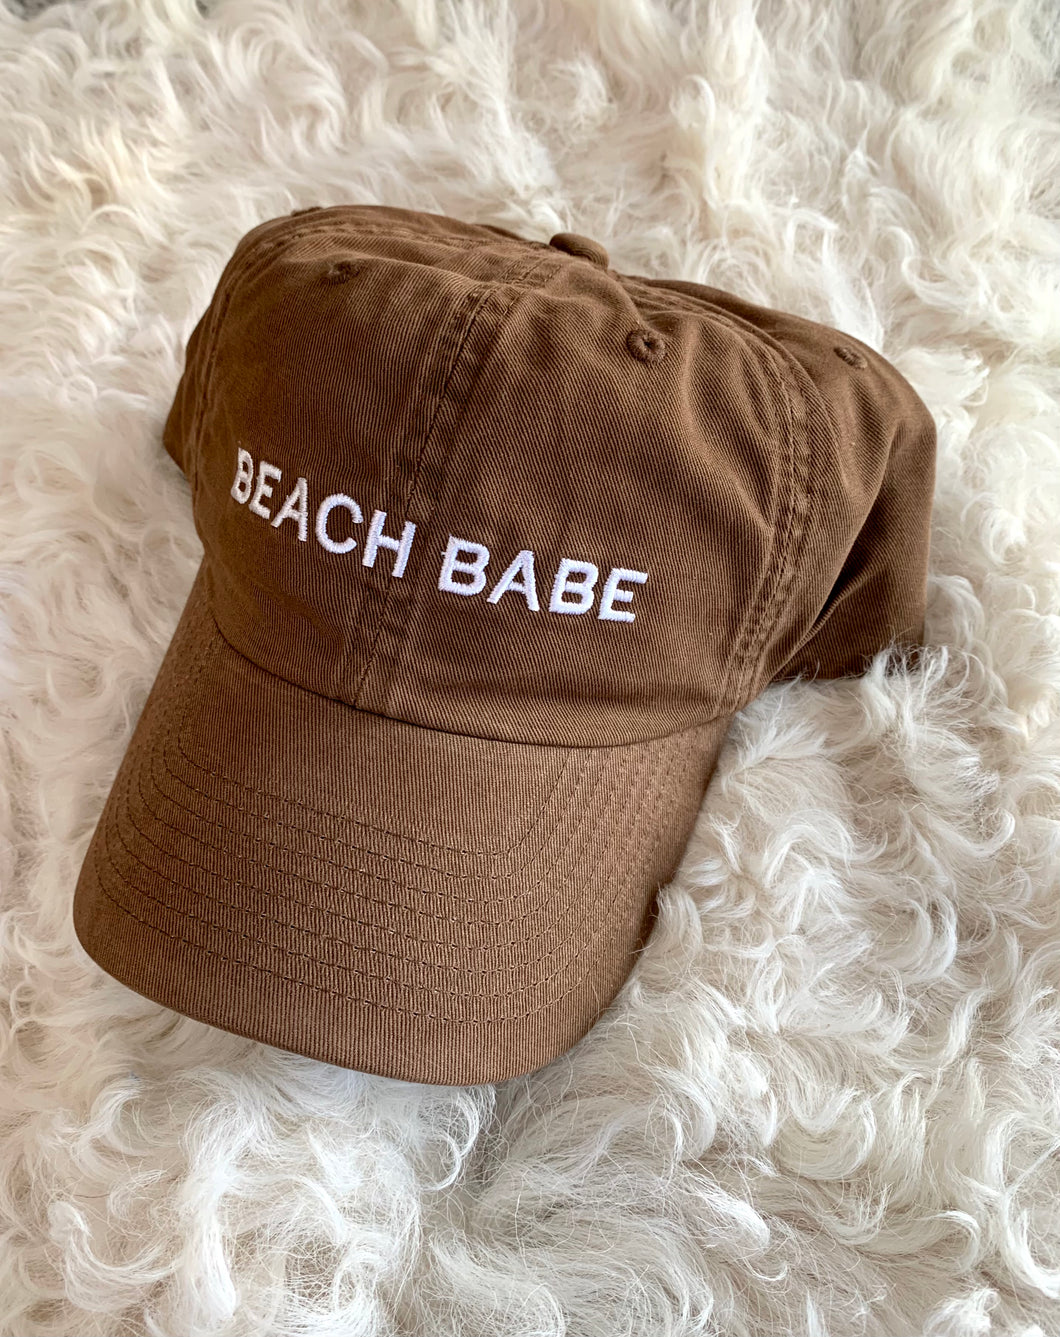 The Beach Babe Cap